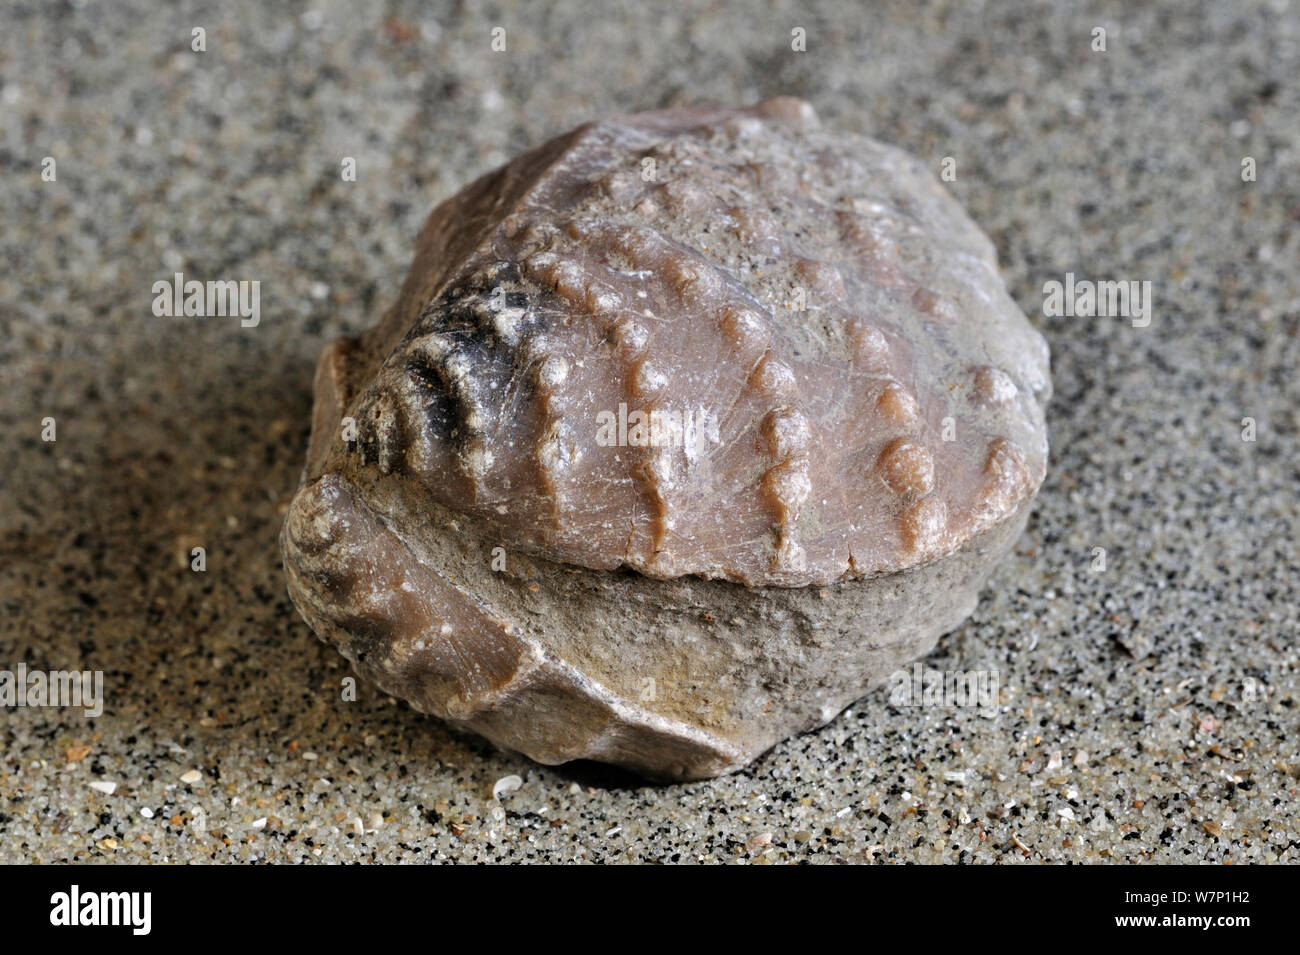 Combustibles (Myophorella clavellata eau salée), de palourdes, de mollusques bivalves marins trouvés à Vaches Noires en Normandie, France Banque D'Images